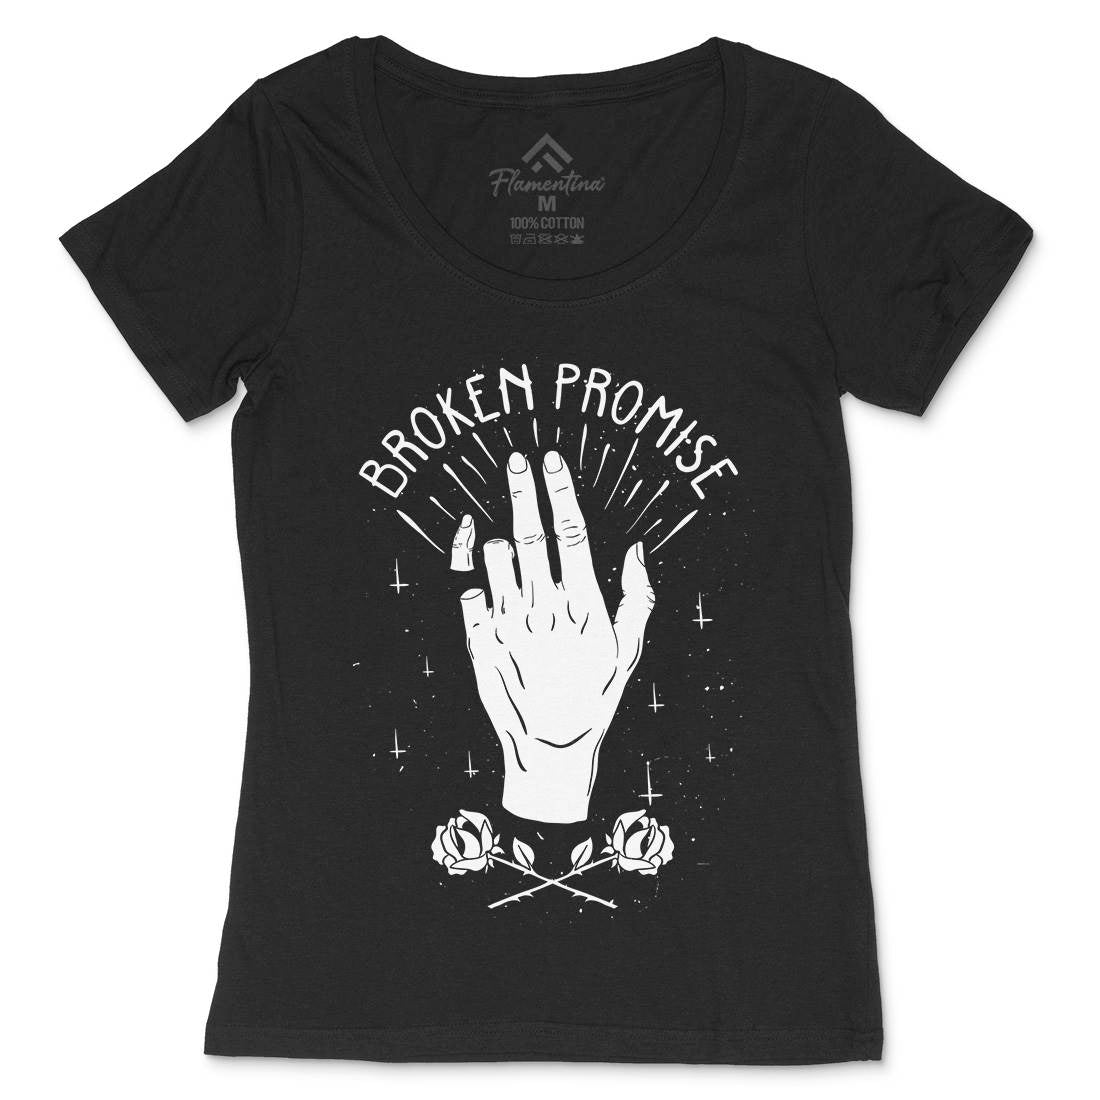 Broken Promise Womens Scoop Neck T-Shirt Retro D447